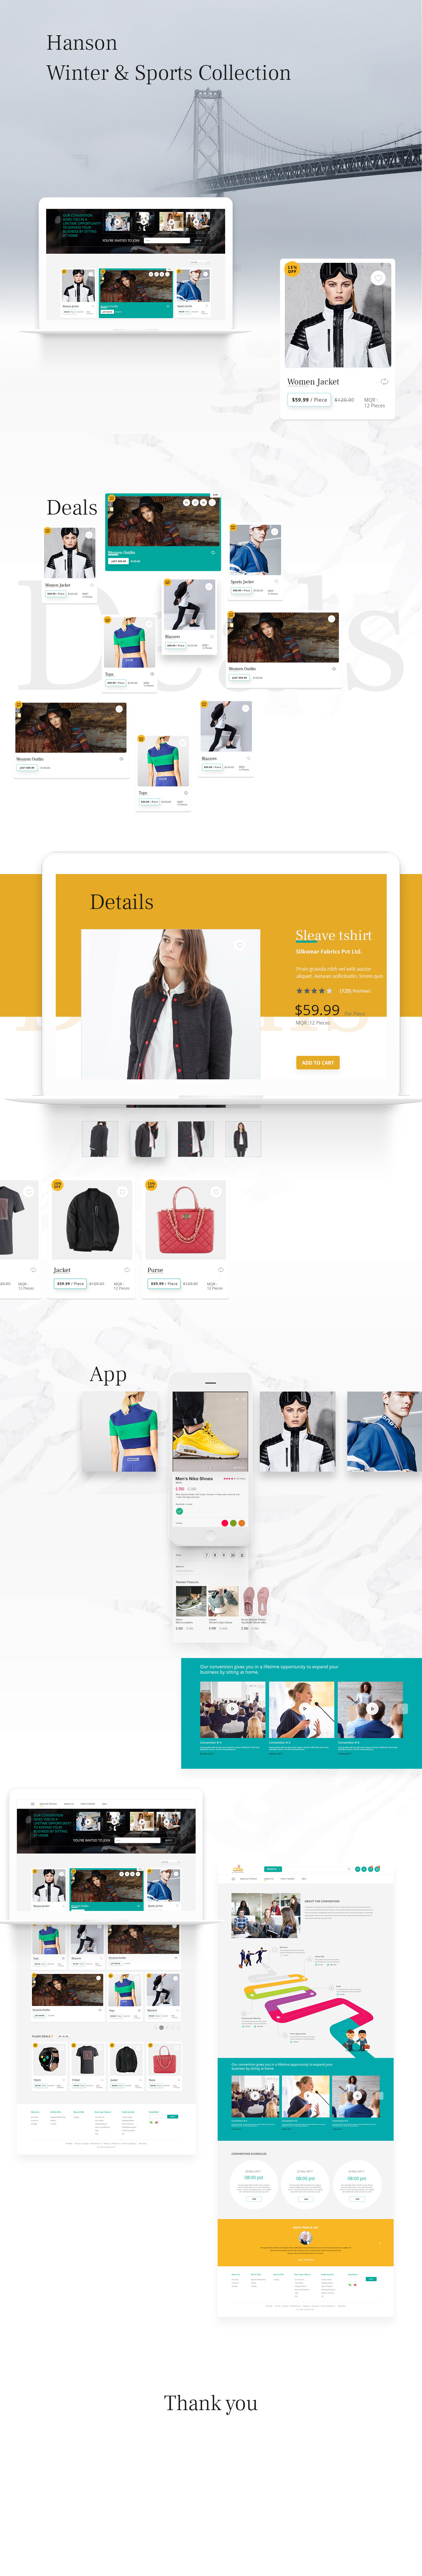 ux UI interactiondesign Webdesign shoppingcart Ecommerce